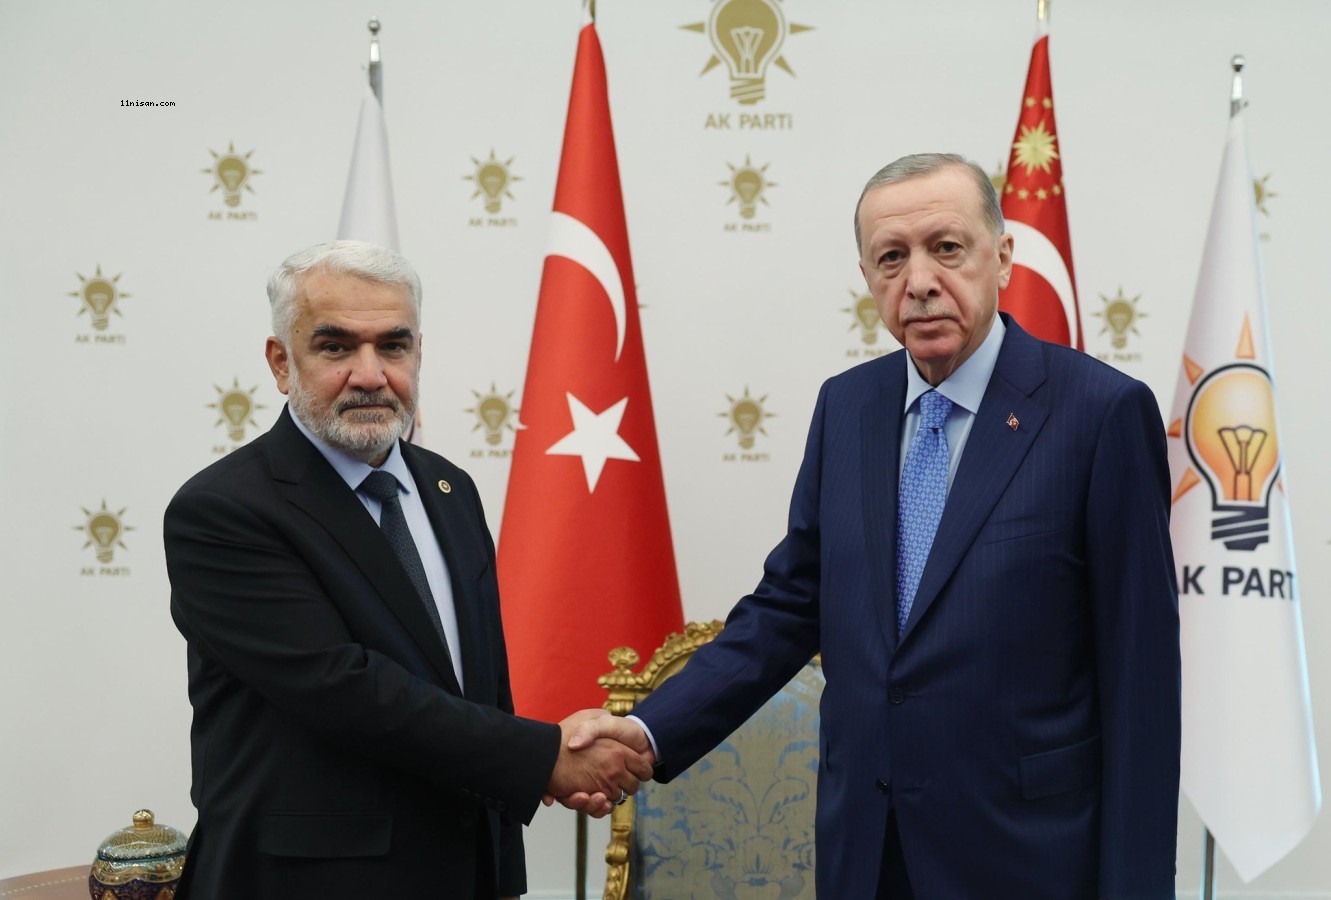 Cumhurbaşkanı Erdoğan, Yapıcıoğlu'nu AK Parti Genel Merkezi'nde kabul etti.